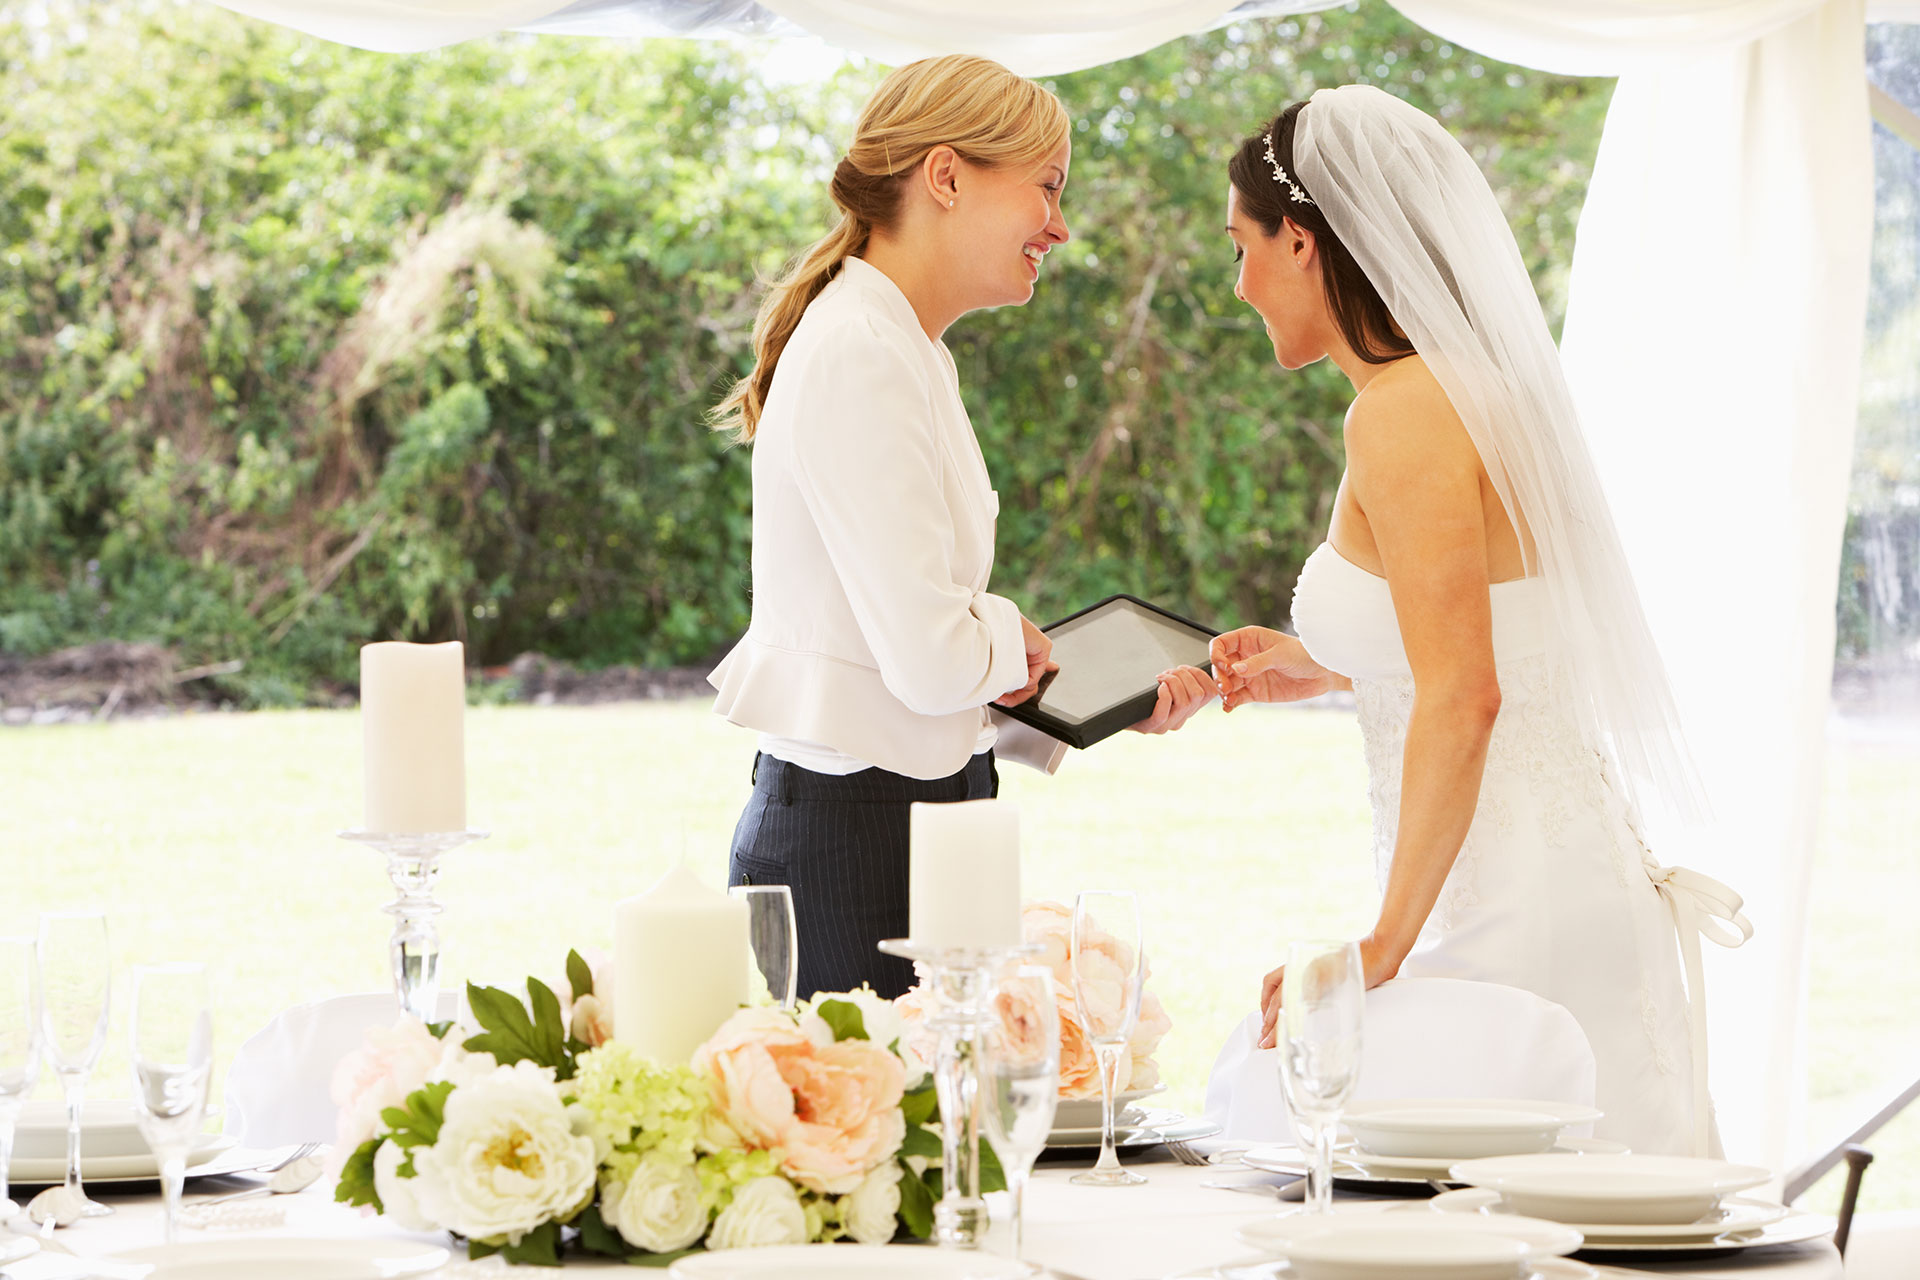 Eine Hochzeit will gut geplant sein - unsere Checkliste hilft dabei